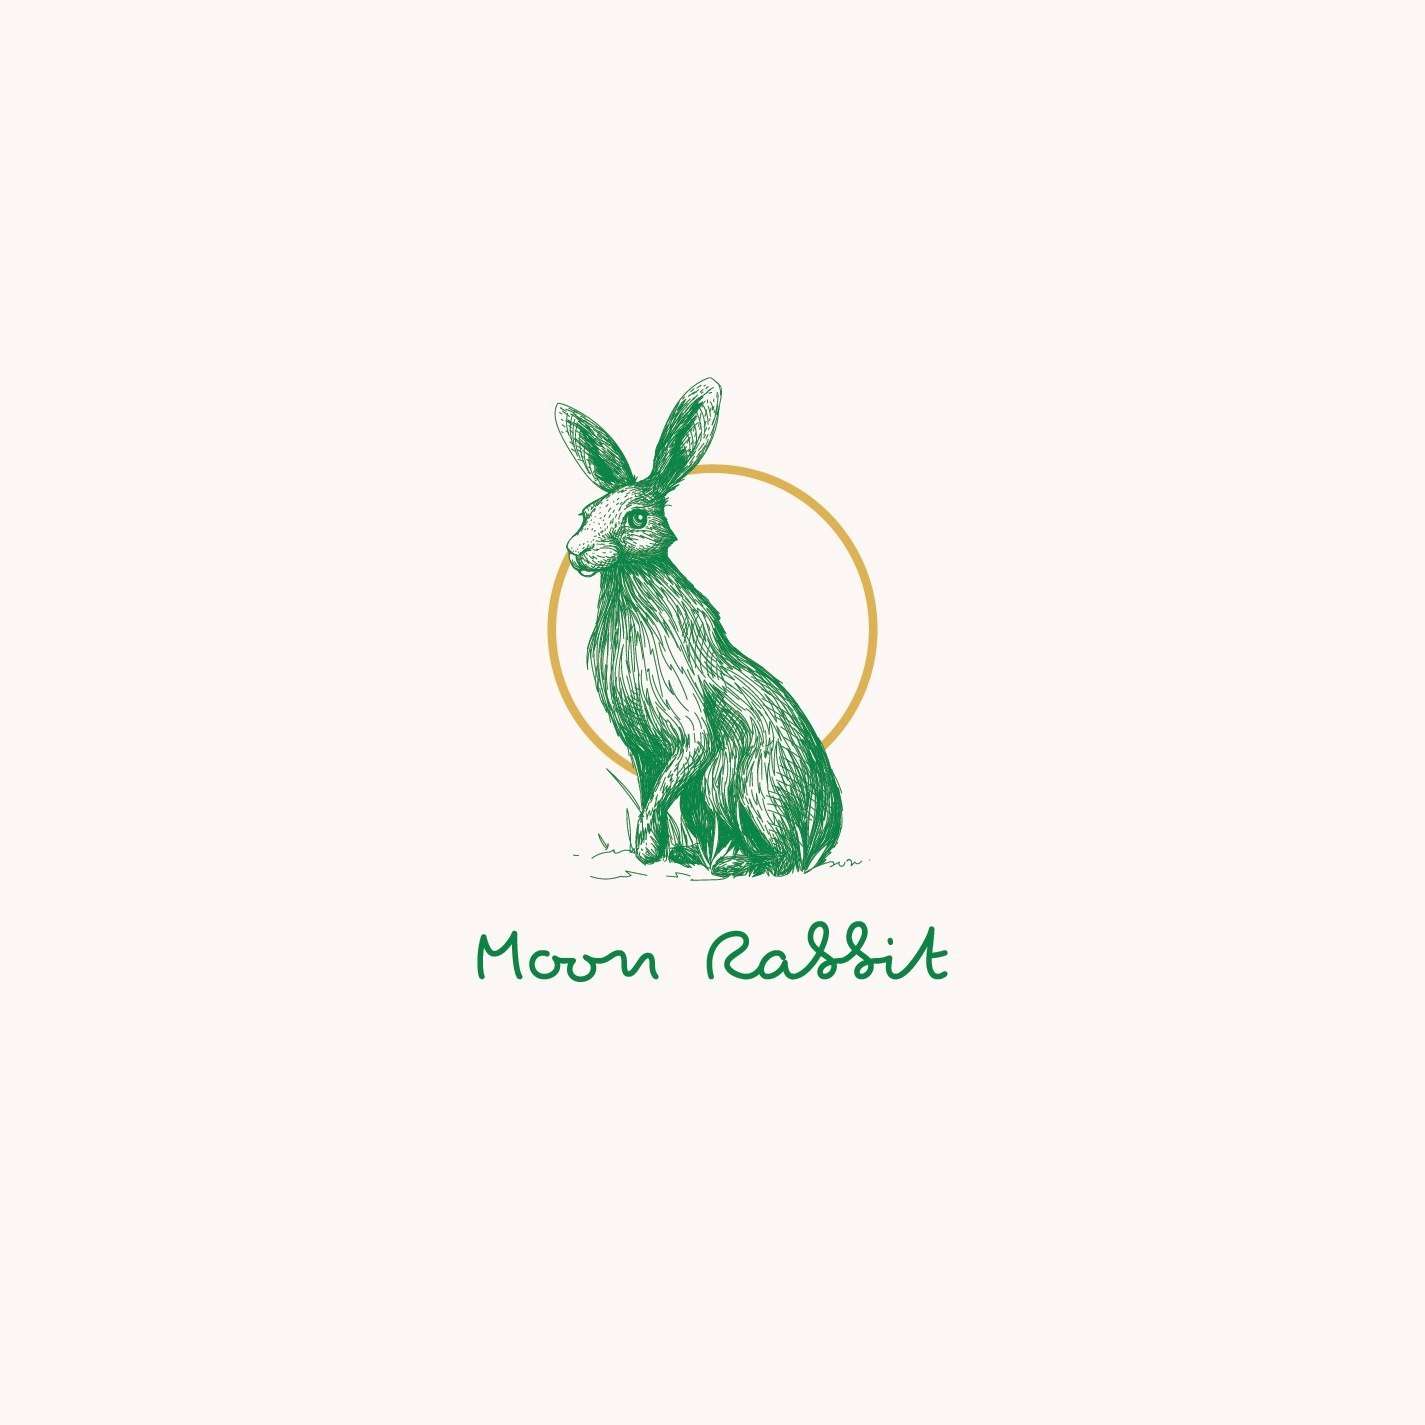  Logo de police de script avec illustration de lapin 